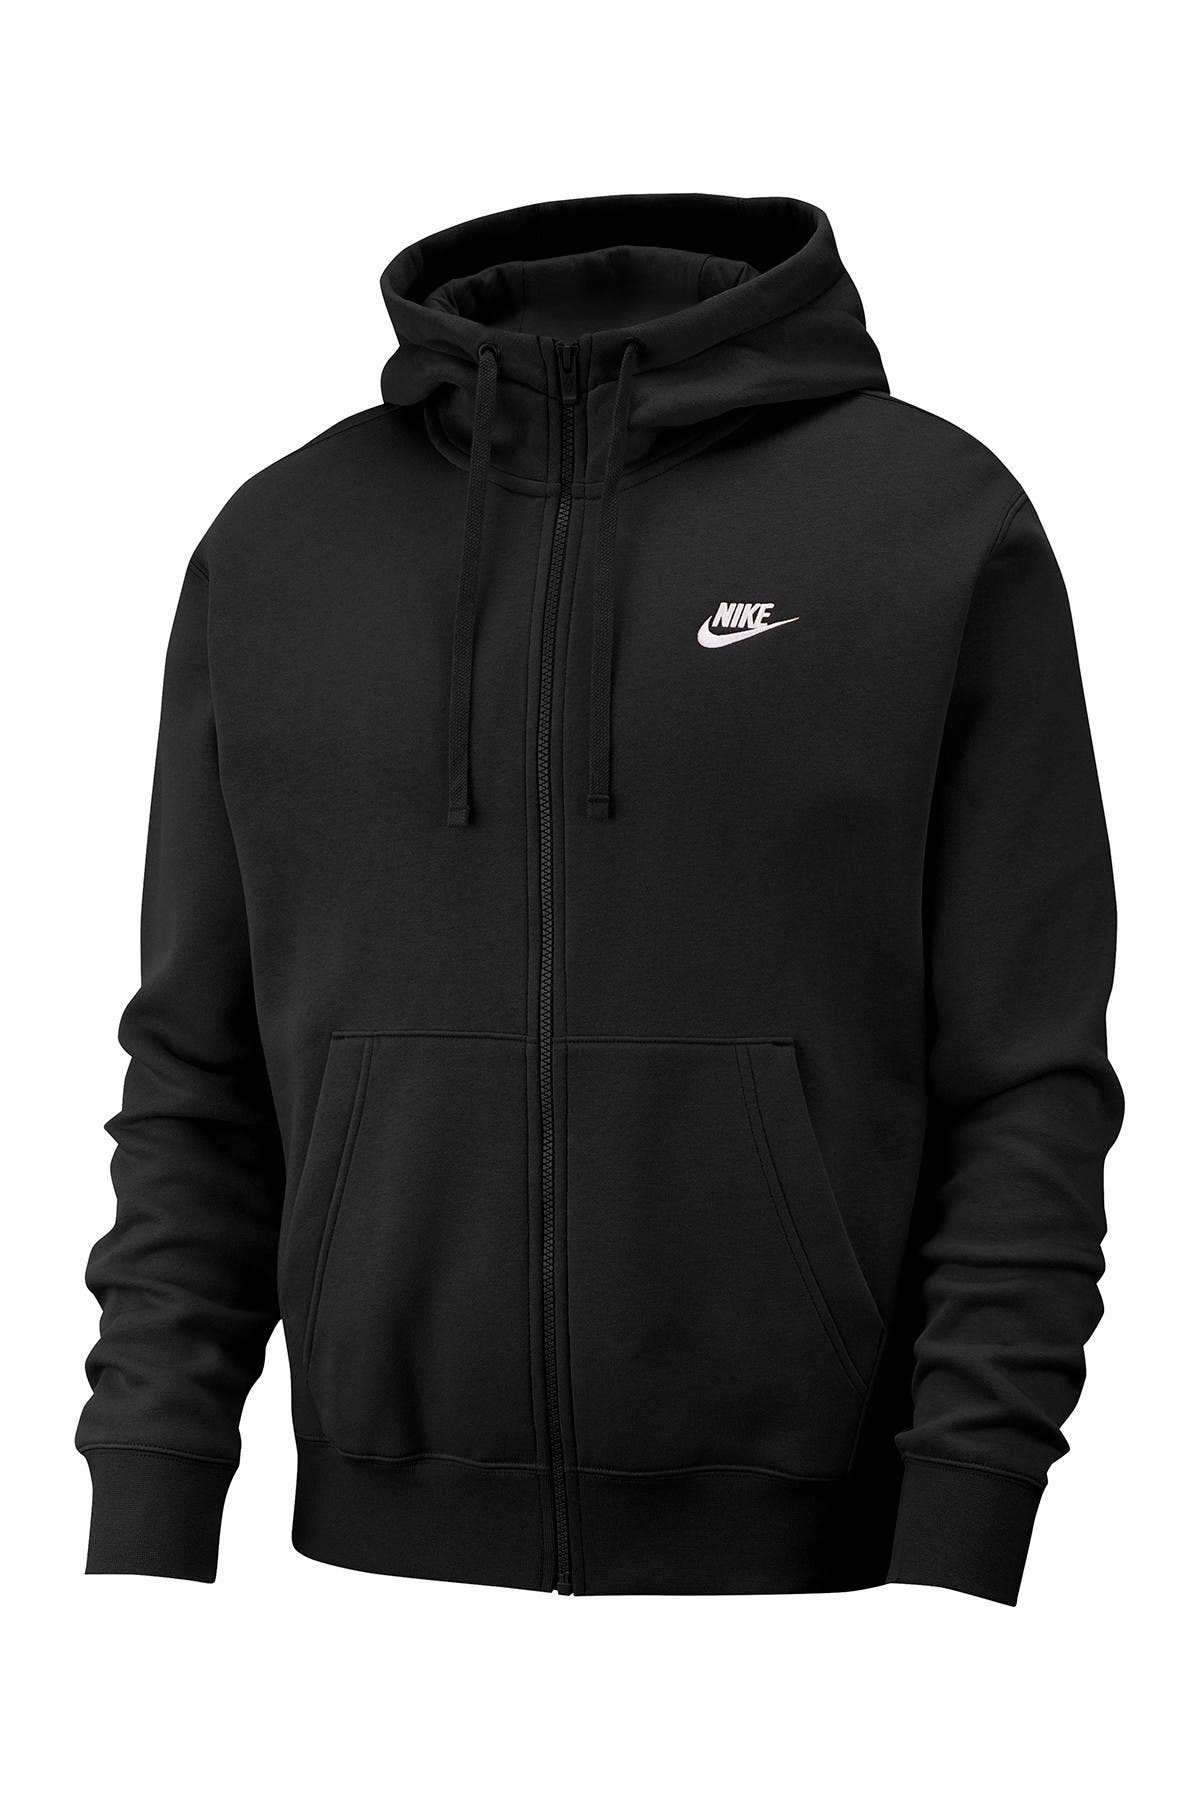 all black nike hoodies